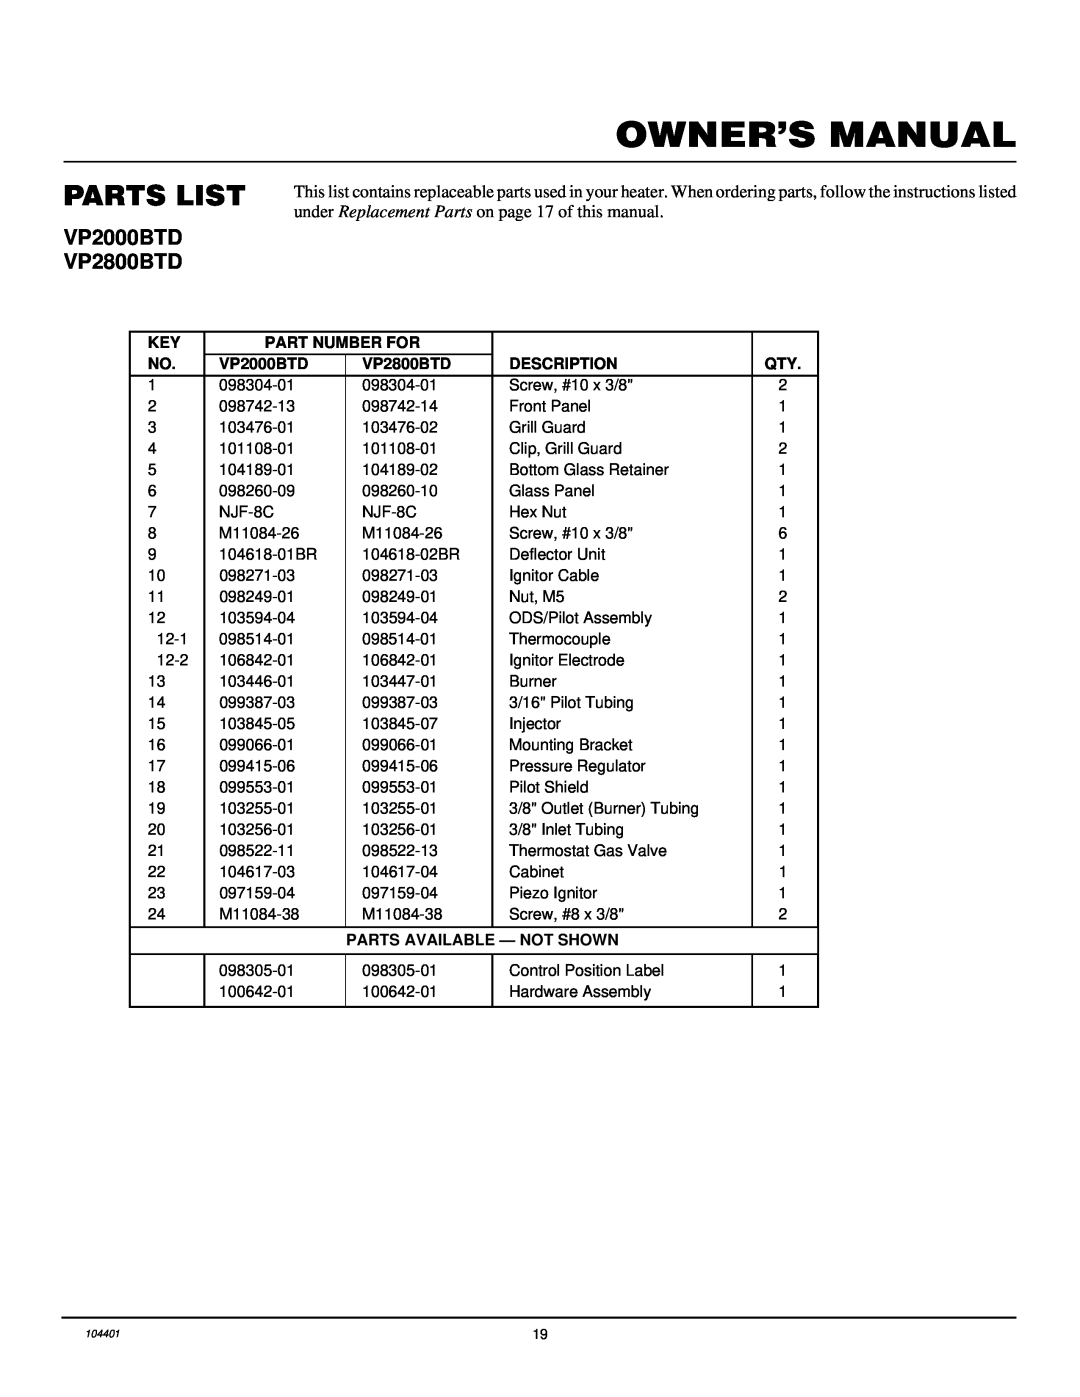 Vanguard Heating installation manual Parts List, Owner’S Manual, VP2000BTD VP2800BTD, Part Number For, Description 